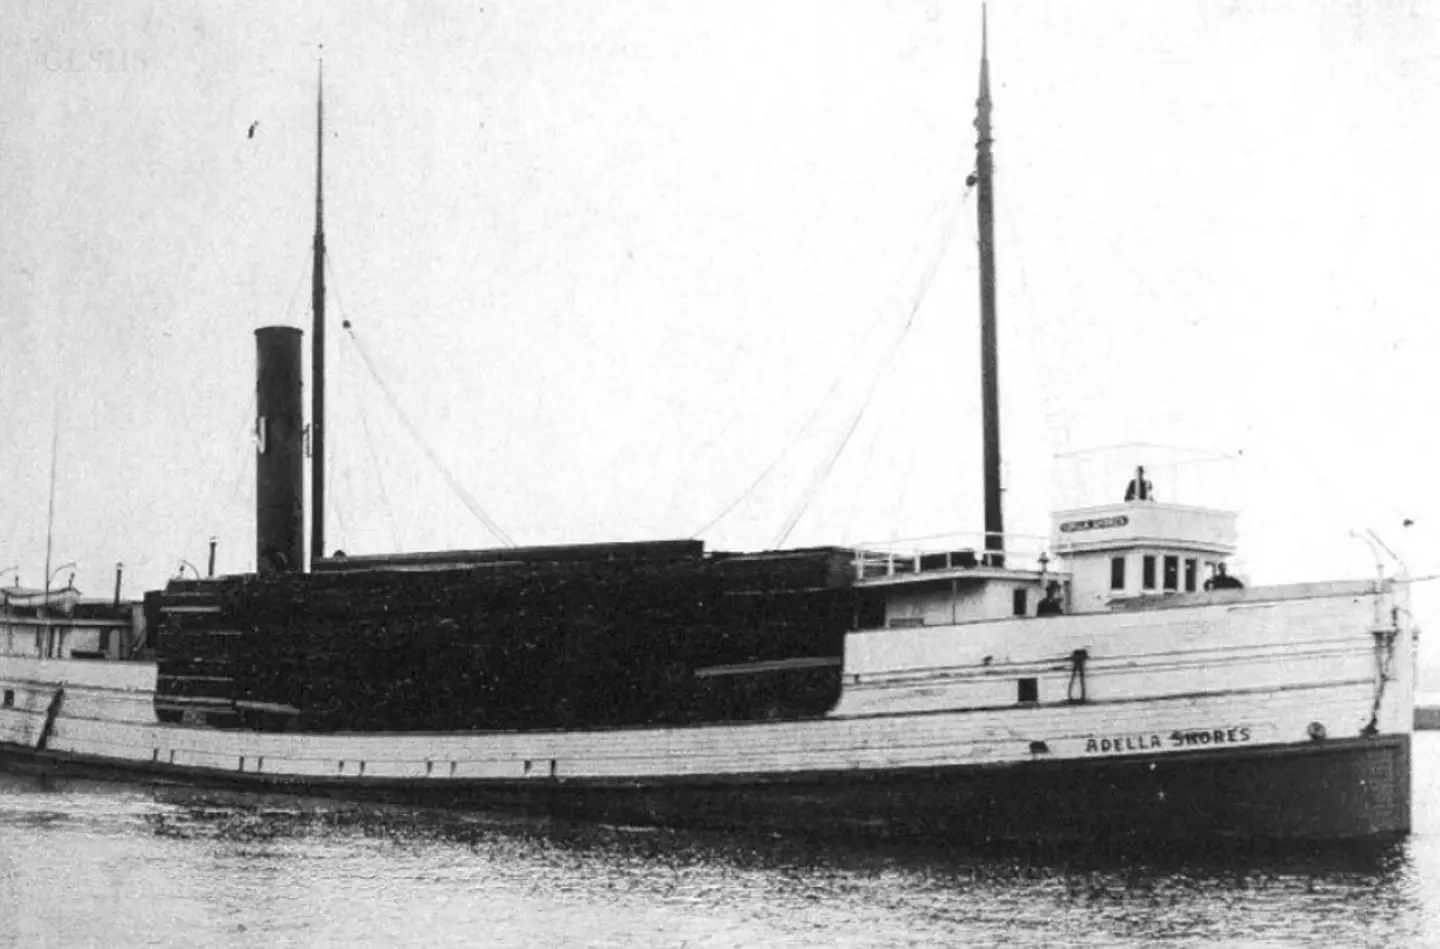 Navio 'amaldiçoado' que desapareceu com 14 pessoas a bordo foi finalmente descoberto 115 anos depois